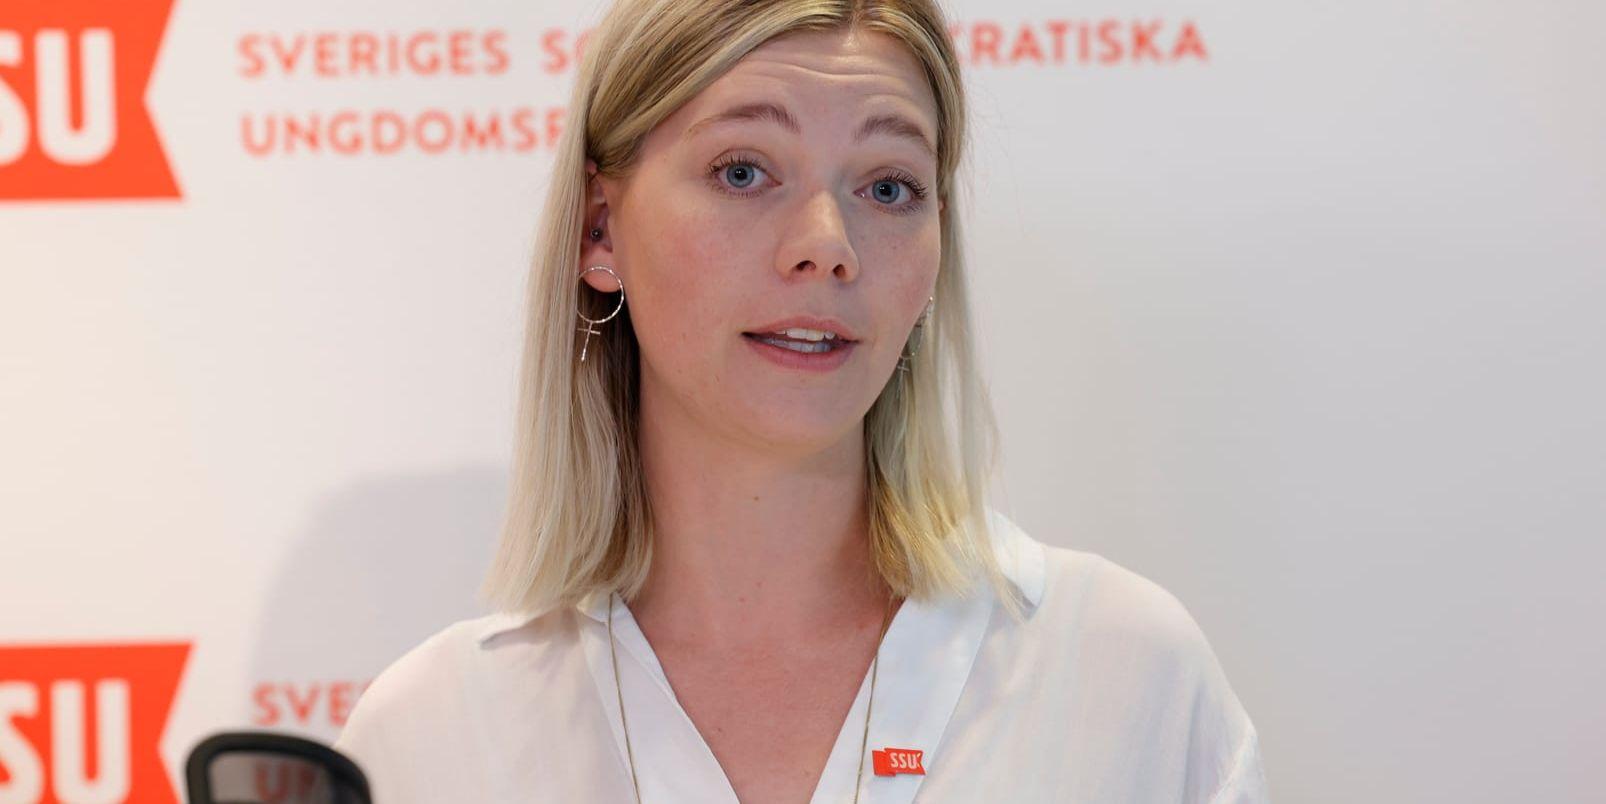 Enligt Lisa Nåbo finns det en stor längtan efter en annan skattepolitik hos såväl medlemmarna i SSU som hos andra S-företrädare. Hon berättar att hon ofta får beröm av socialdemokrater runt om i landet för att hon lyfter skattefrågan.